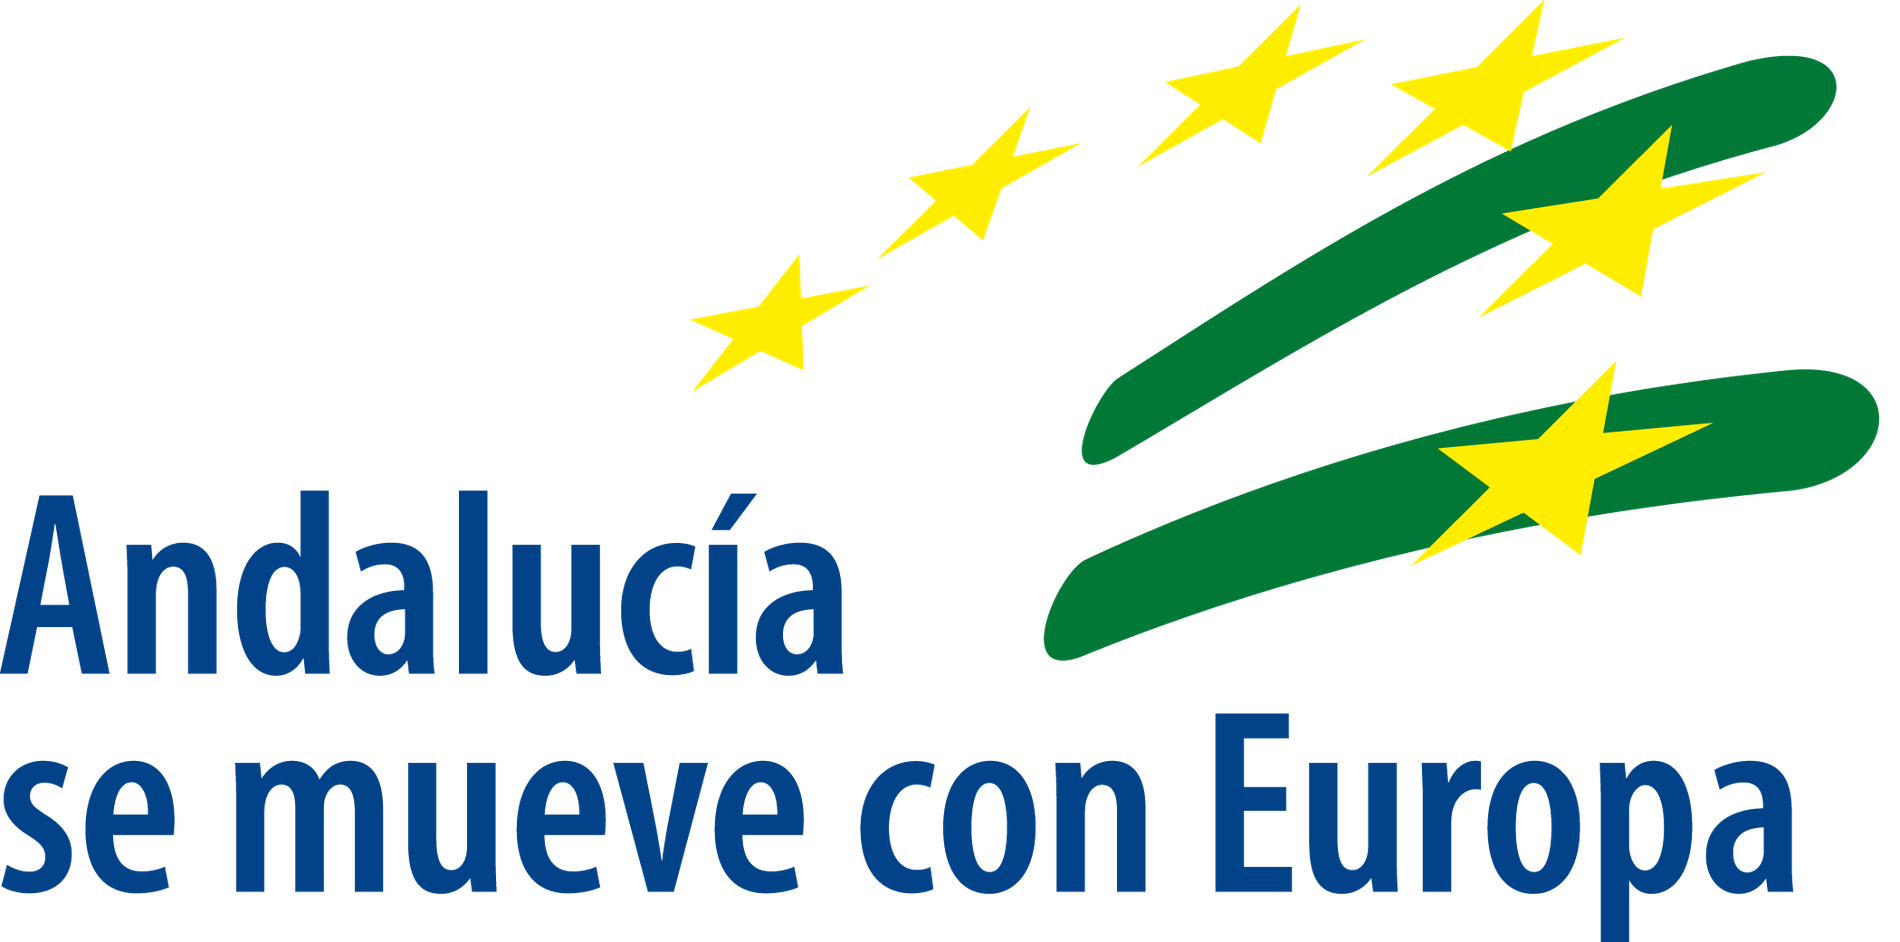 le logo de l' andalucia se mueve avec l' europe